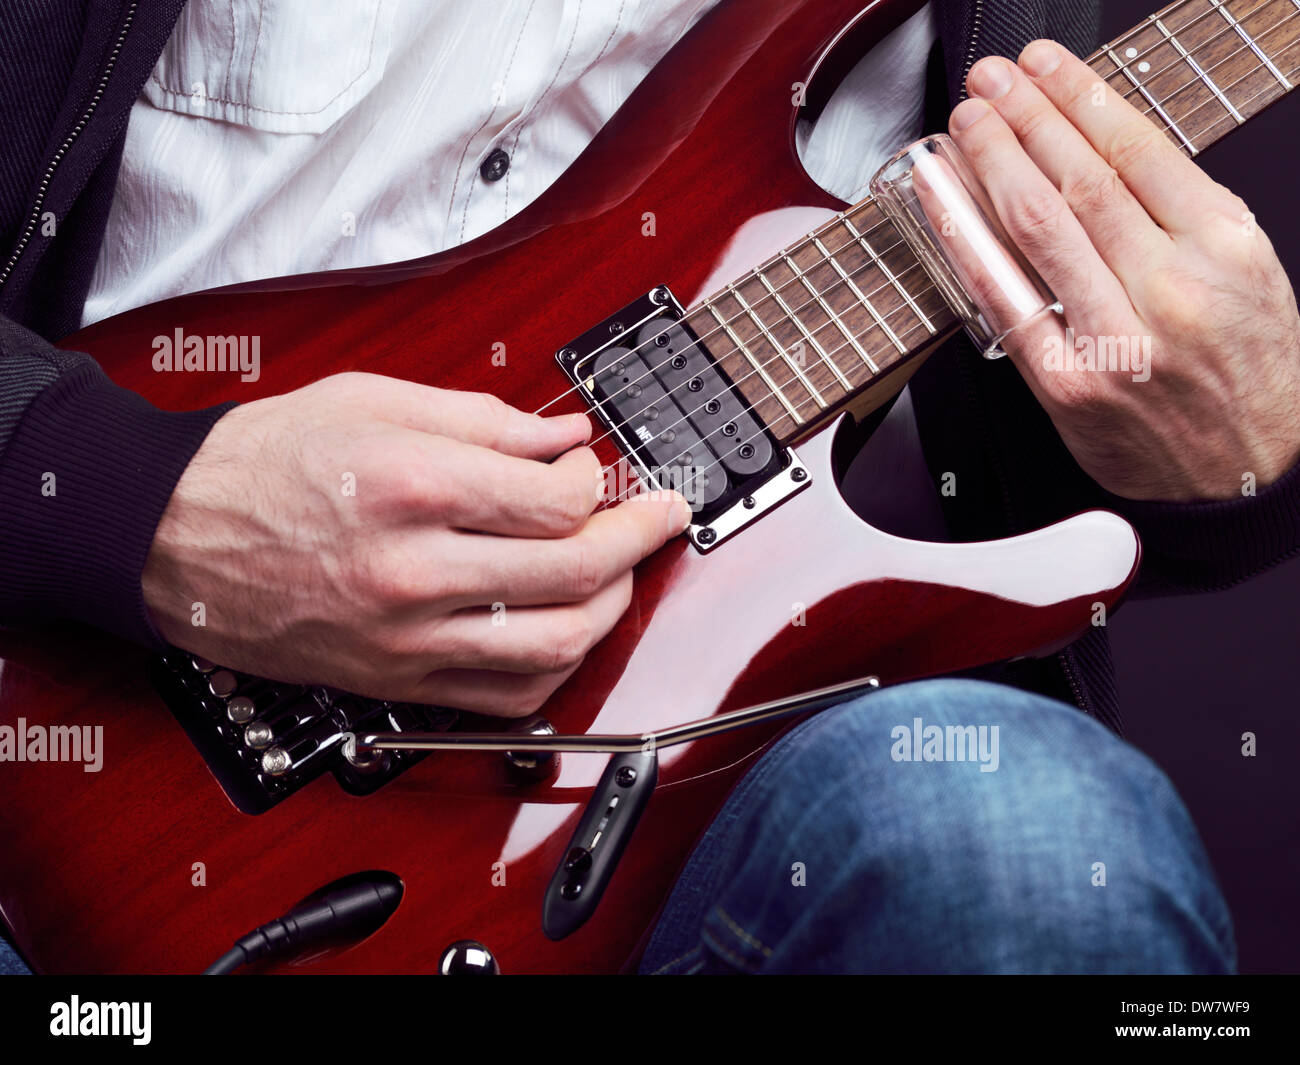 Führerschein und Fingerabdrücke bei MaximImages.com - Nahaufnahme von Männerhänden, die rote elektrische Gitarre mit einer Rutsche spielen Stockfoto